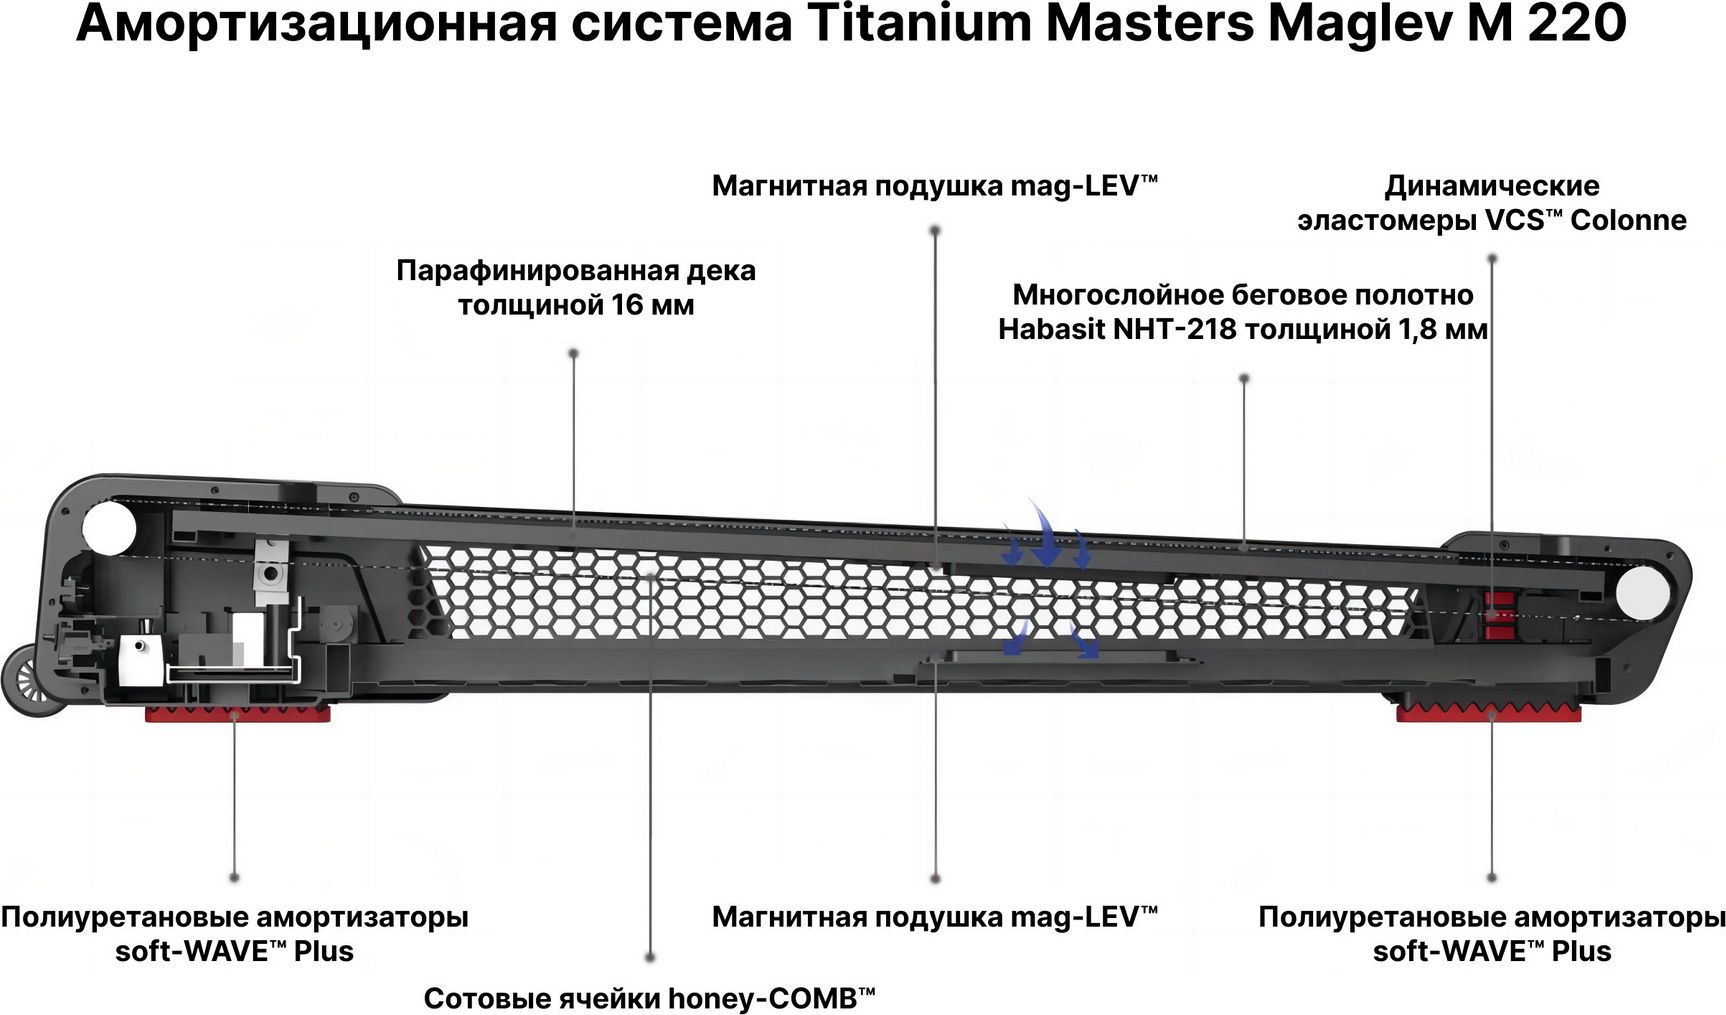 Фото беговая дорожка titanium masters maglev m220